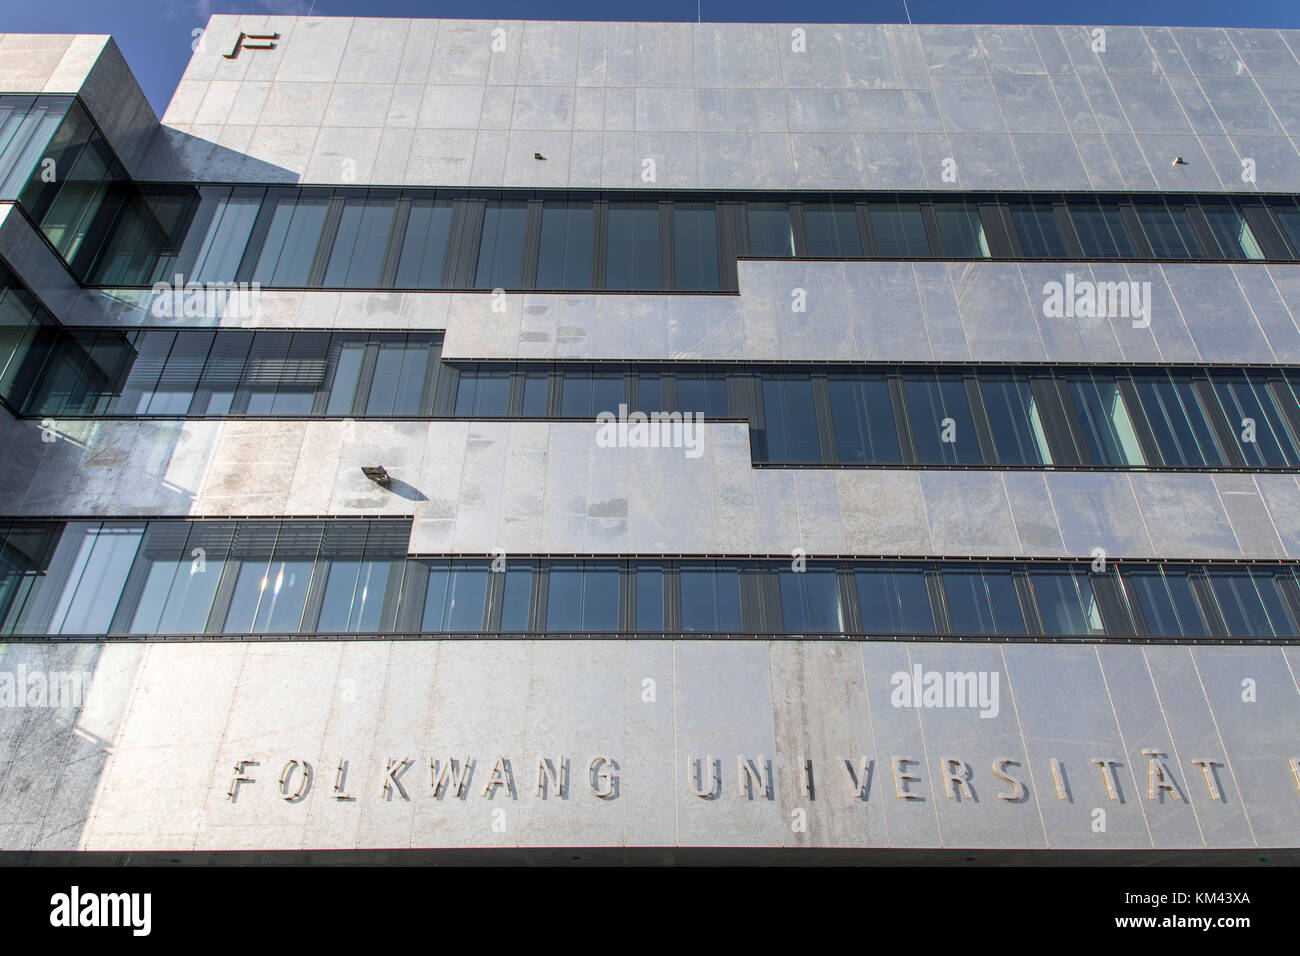 Nouveau bâtiment de l'Université des Arts Folkwang, sur le terrain de la mine Zeche Zollverein à Essen, Allemagne Banque D'Images